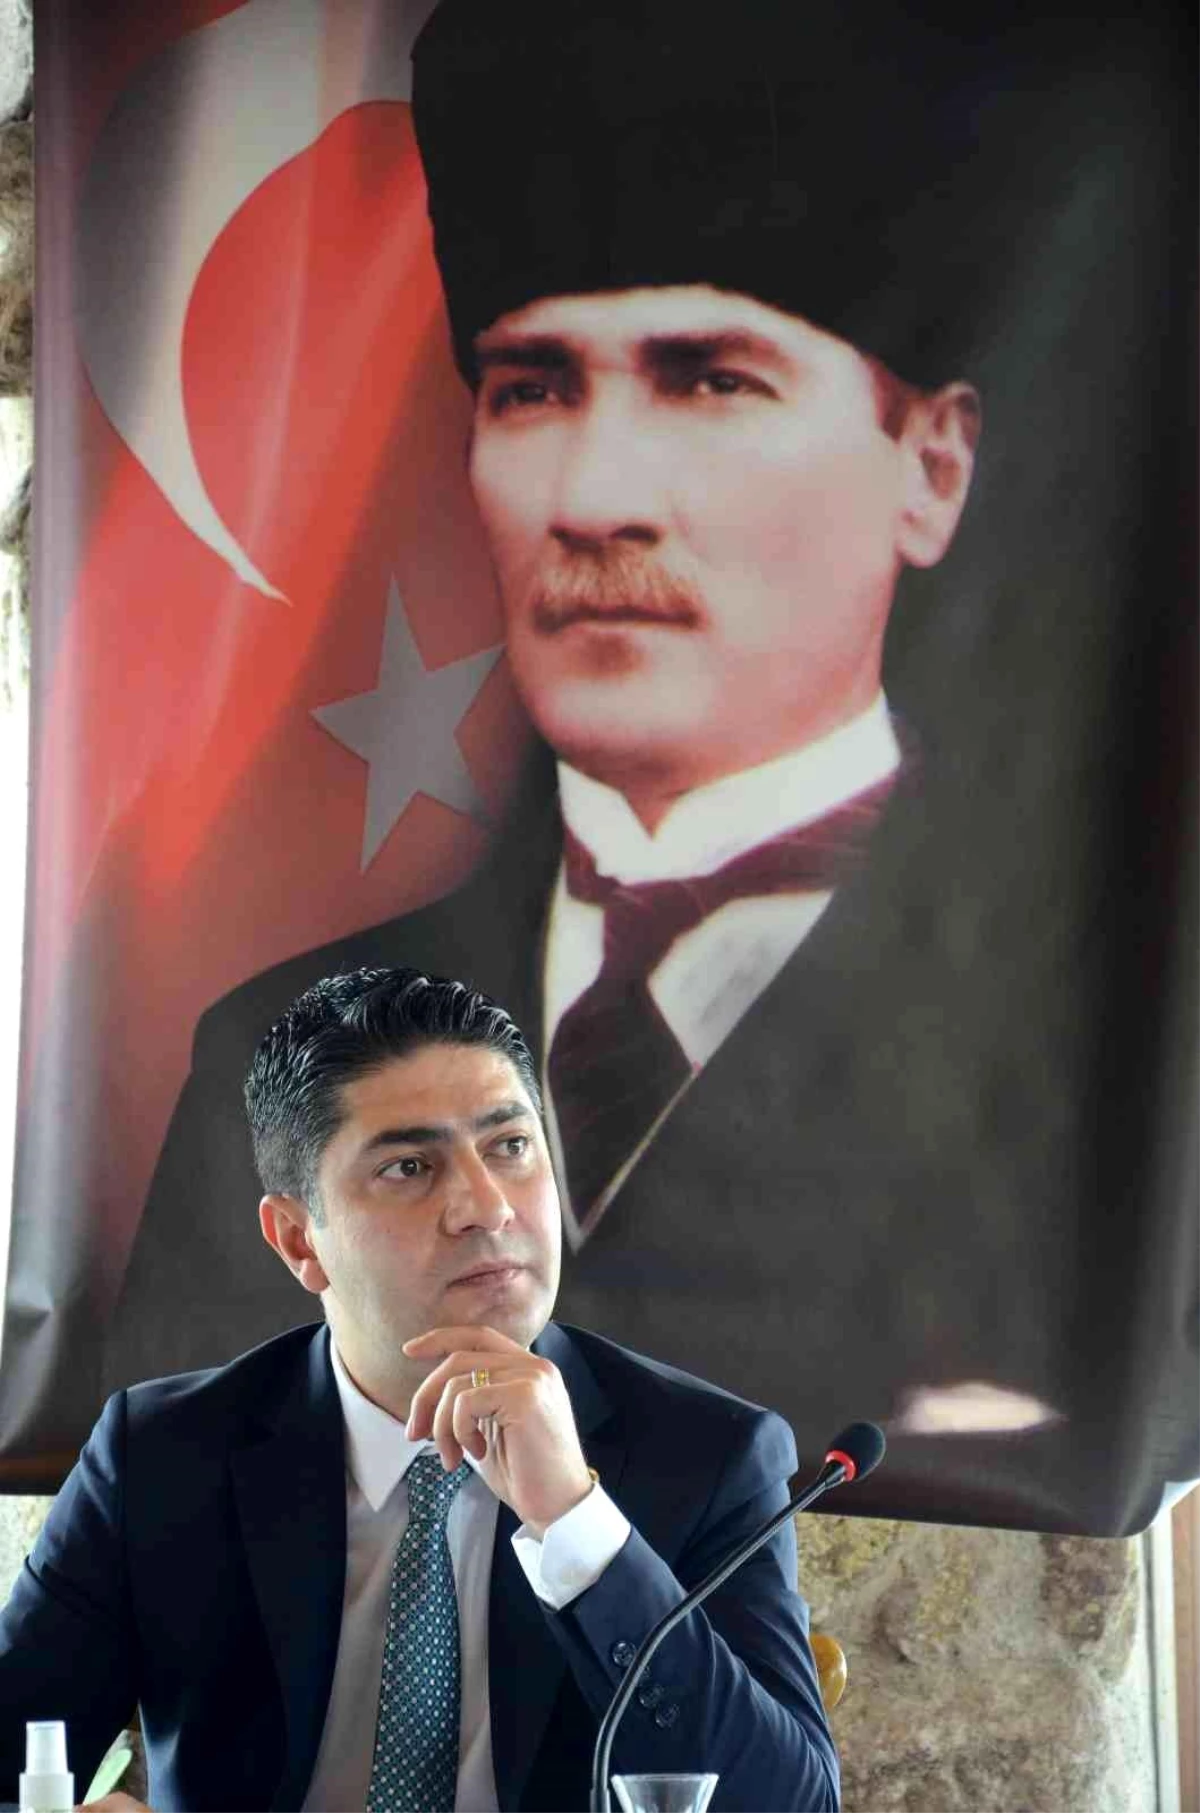 MHP Genel Başkan Yardımcısı İsmail Özdemir: "Kılıçdaroğlu\'nun dokunulmazlığının kaldırılması gerekir"